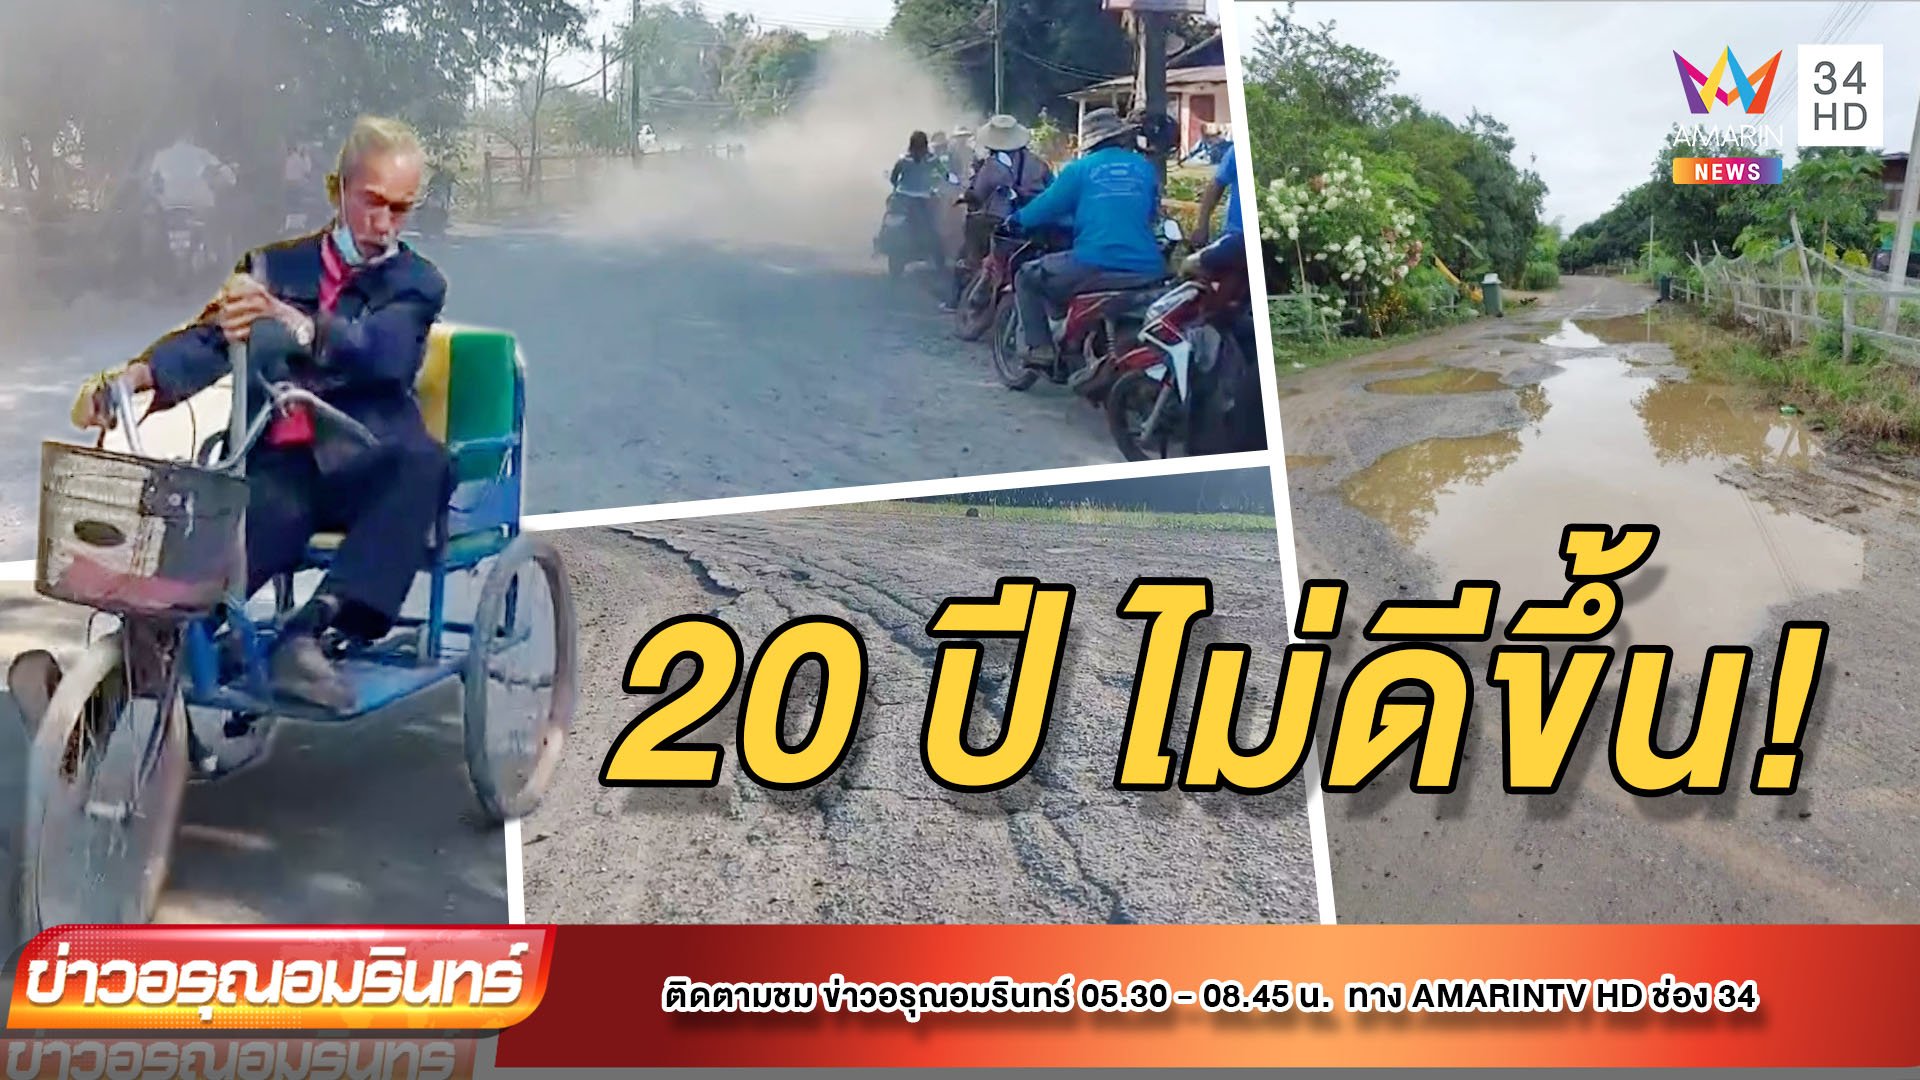 ชาวบ้านร้องถนนพังกว่า 20 ปี สูญเสีย 3 ราย | ข่าวอรุณอมรินทร์ | 14 ม.ค. 65 | AMARIN TVHD34